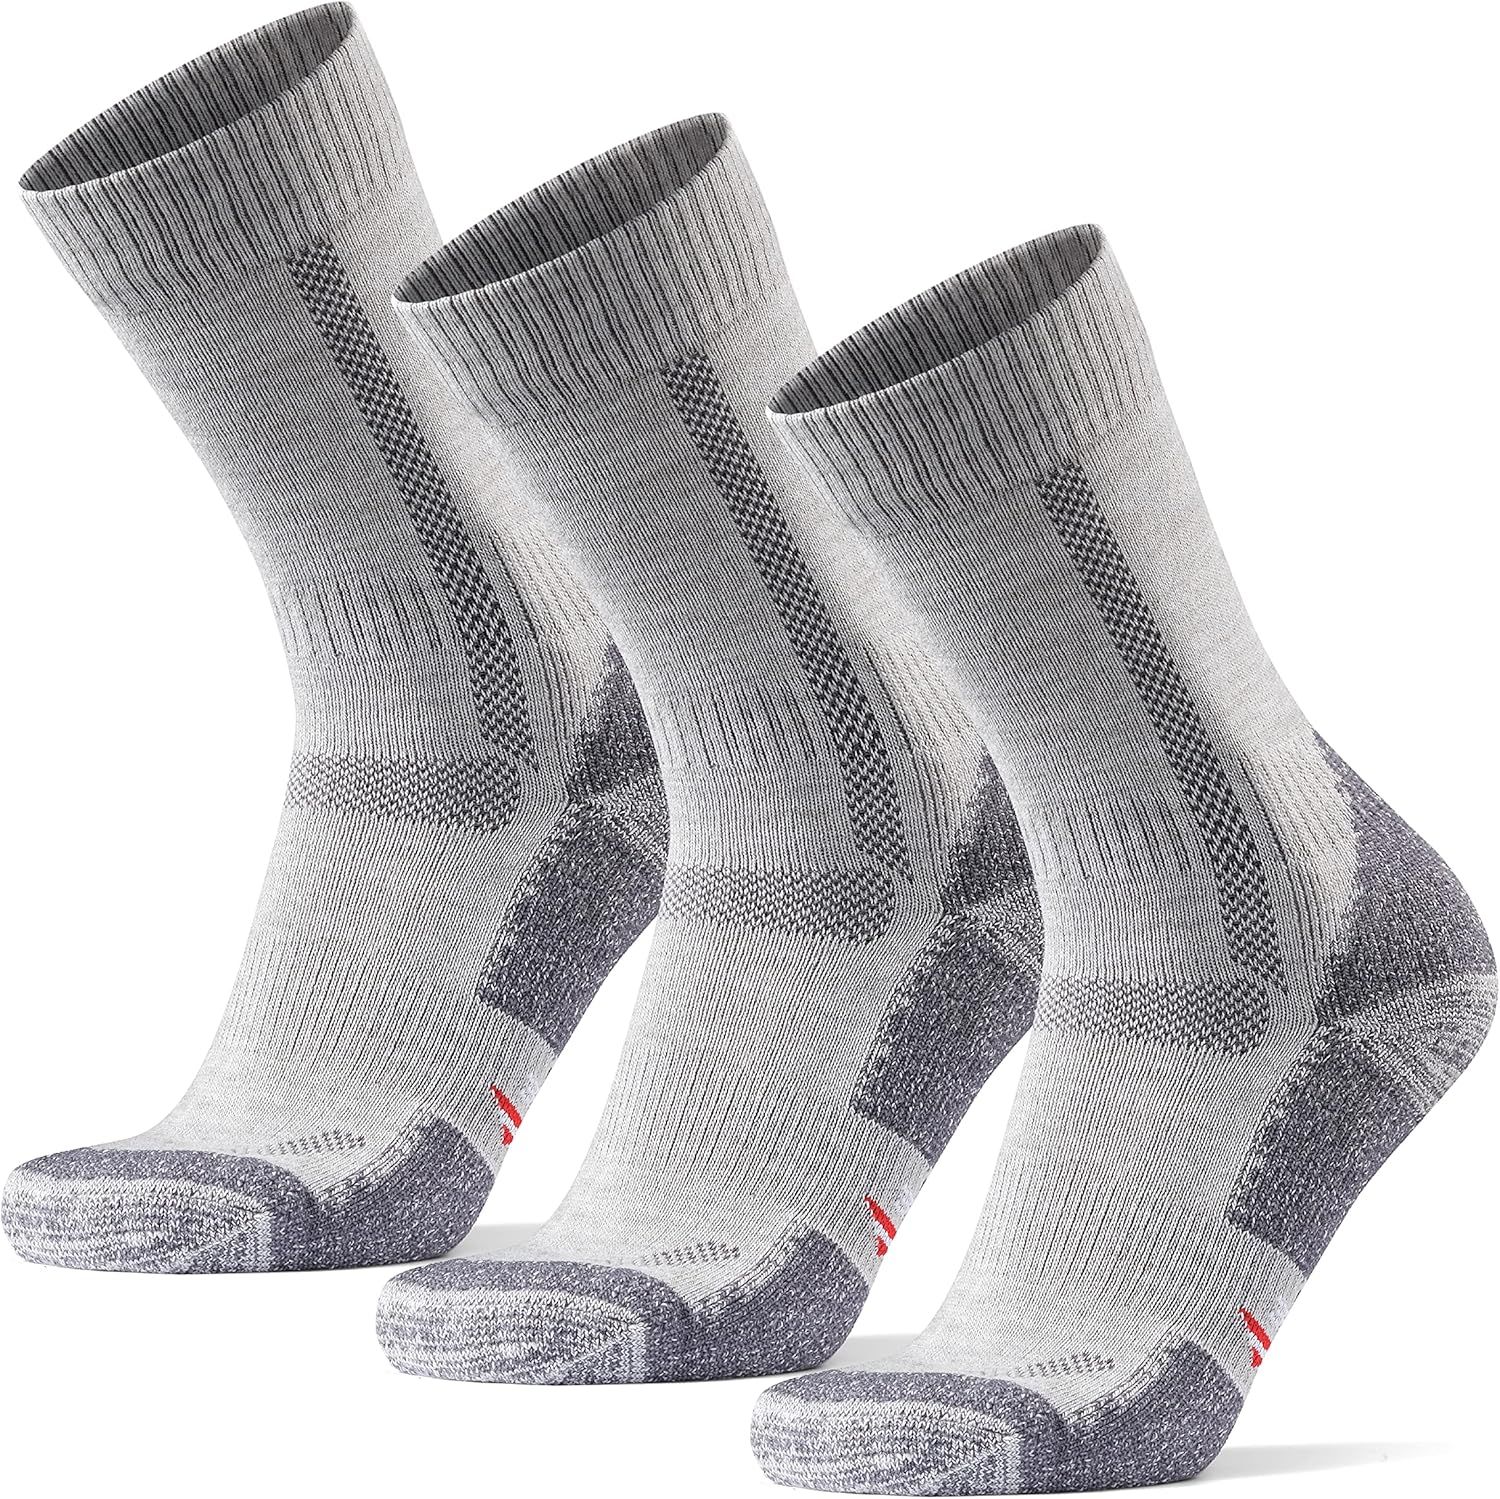 DANISH ENDURANCE Merino Wool Cushioned Hiking Socks 3-Pack for Men, Women & Kids, Walking, Trekki... | Amazon (US)